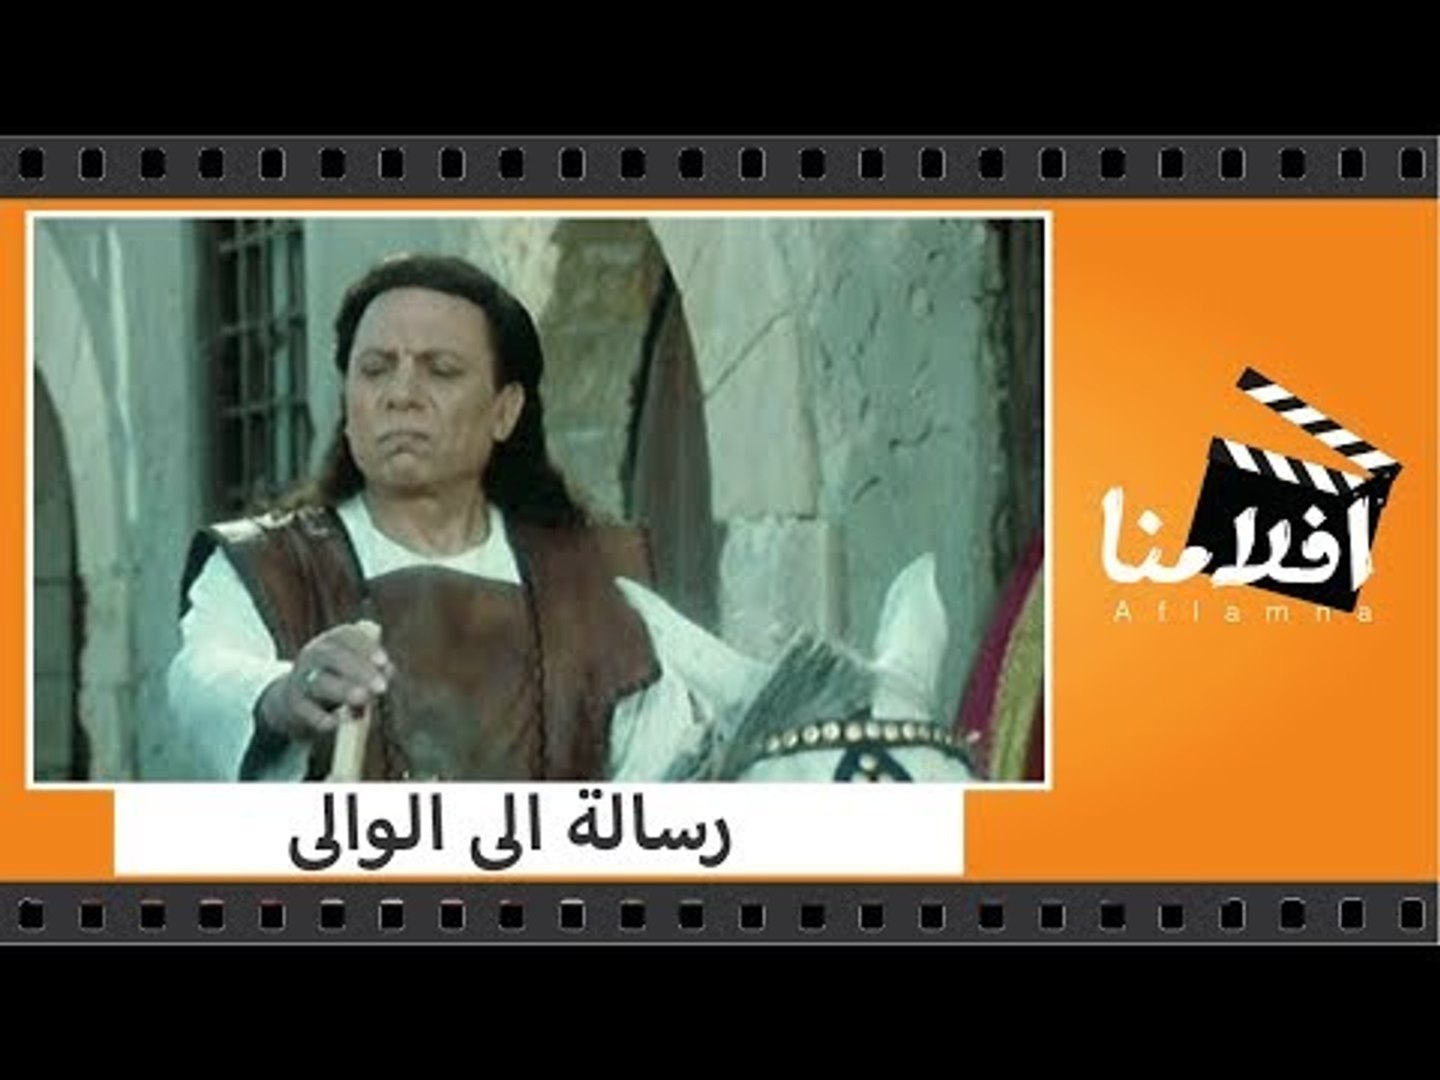 الفيلم العربي رسالة الى الوالى بطولة عادل إمام ومصطفى متولي